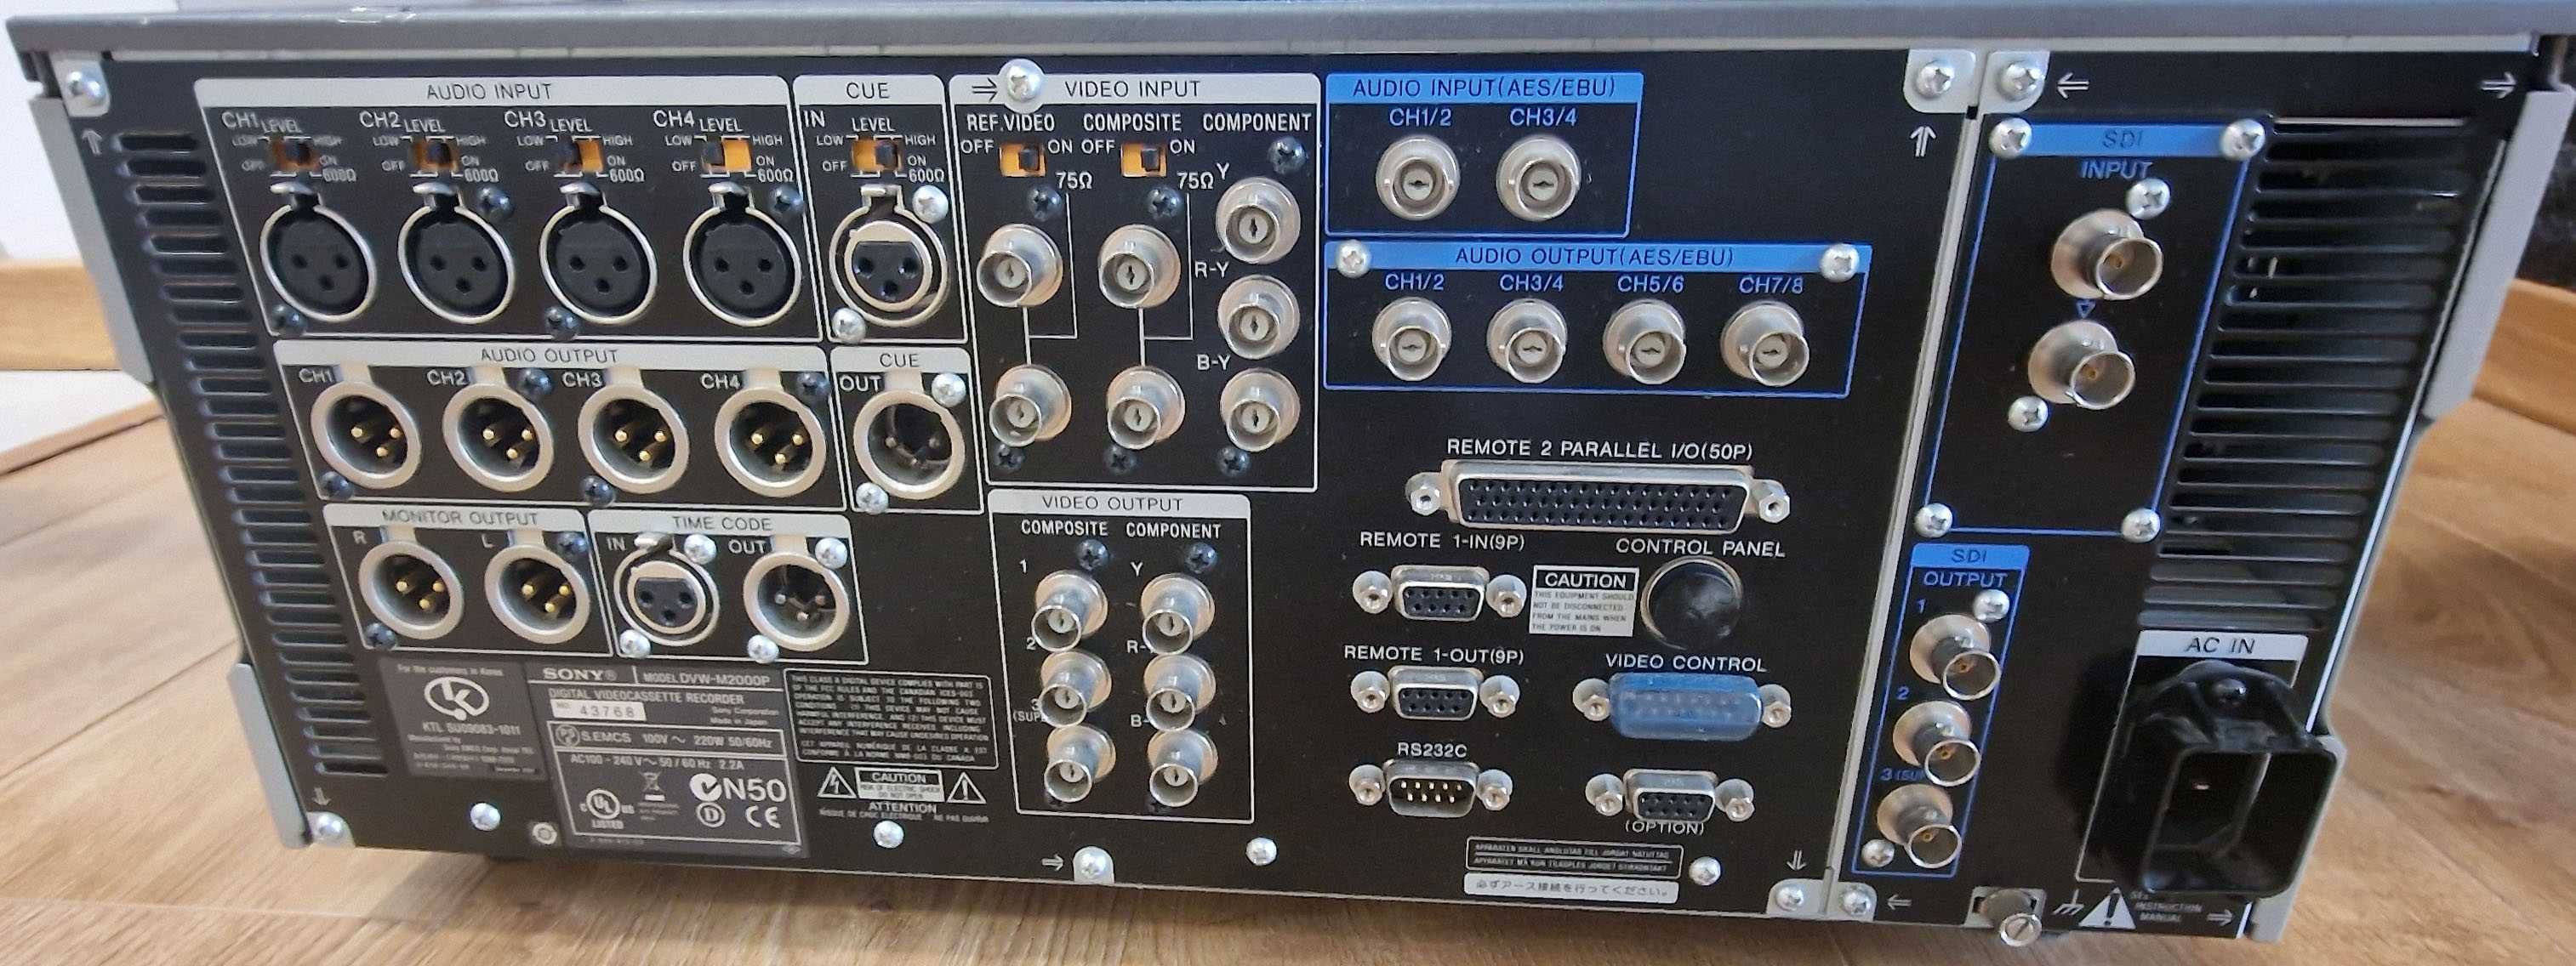 Sony DVW-M2000P BetaCam recorder